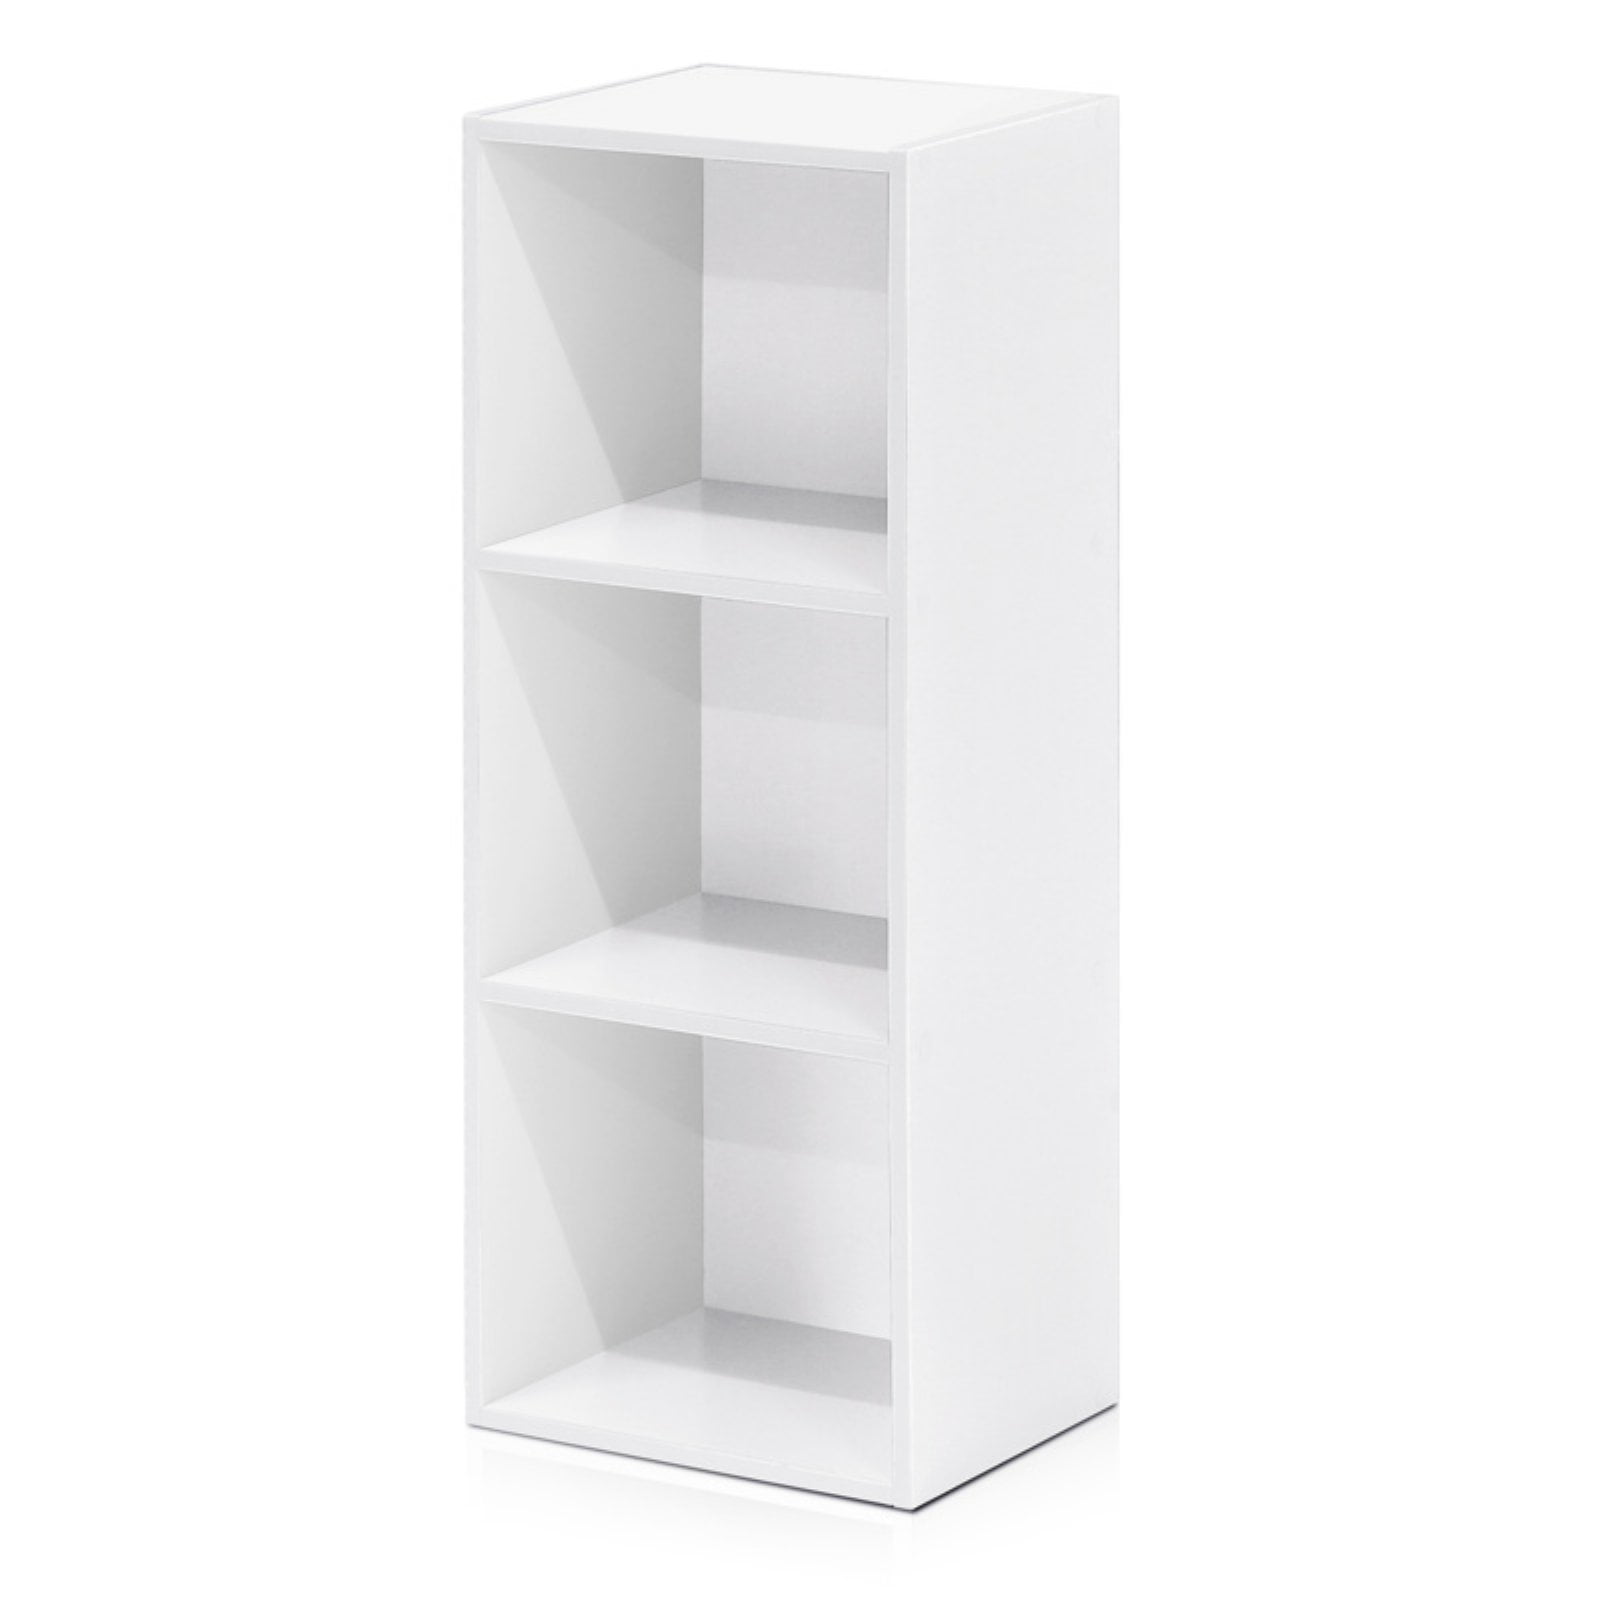 Furinno 3-tier Open Shelf Bookcase White 11003WH for sale online 